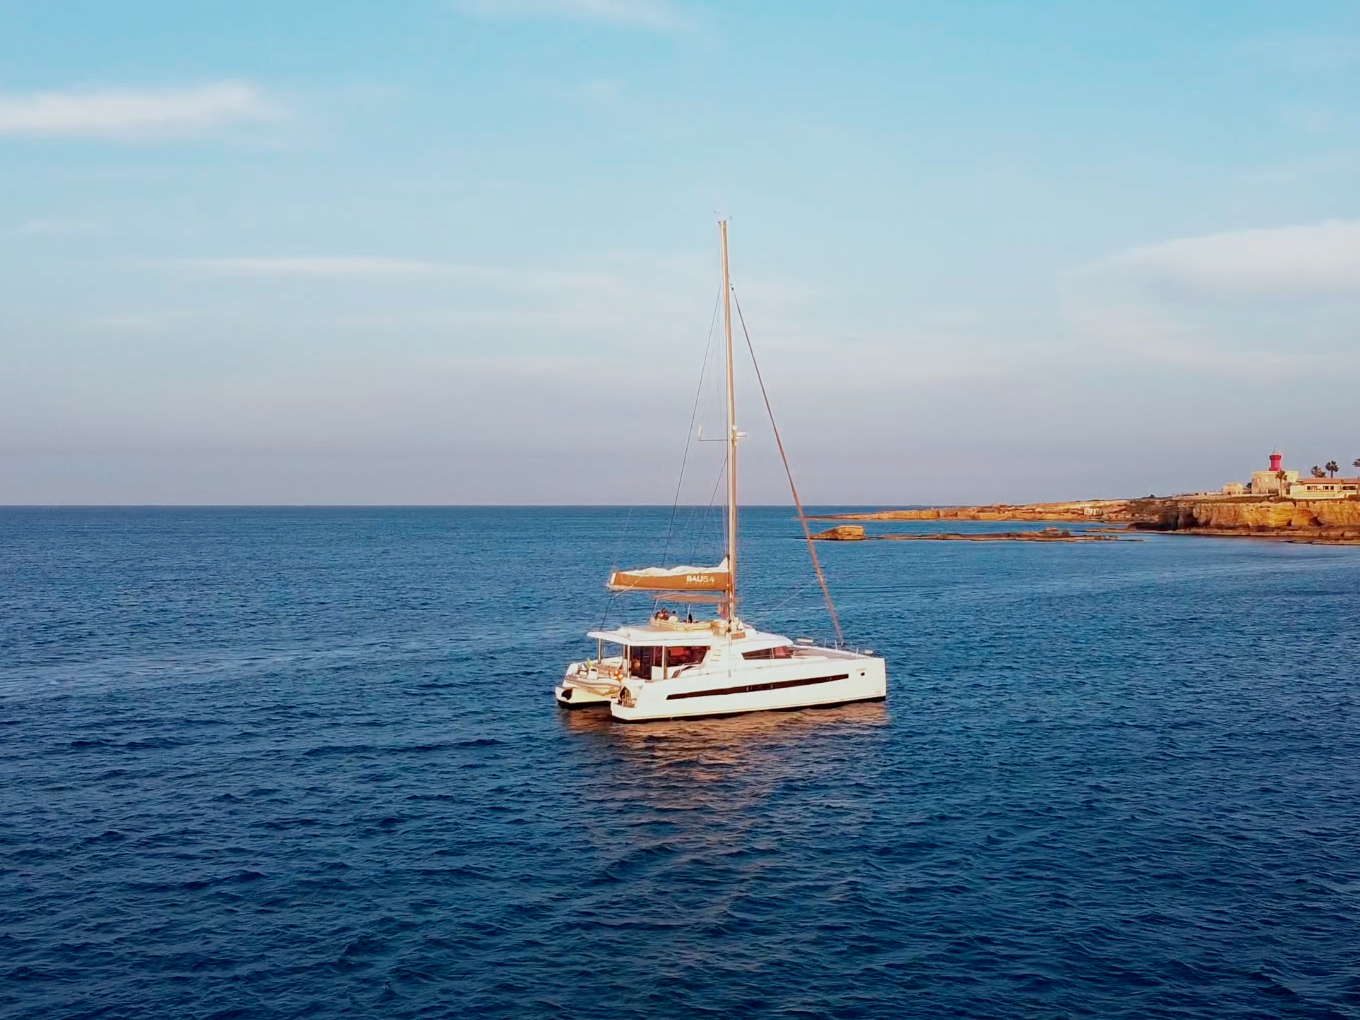 Bali 5.4 - Luxury yacht charter Sicily & Boat hire in Italy Sicily Aeolian Islands Capo d'Orlando Capo d'Orlando Marina 2